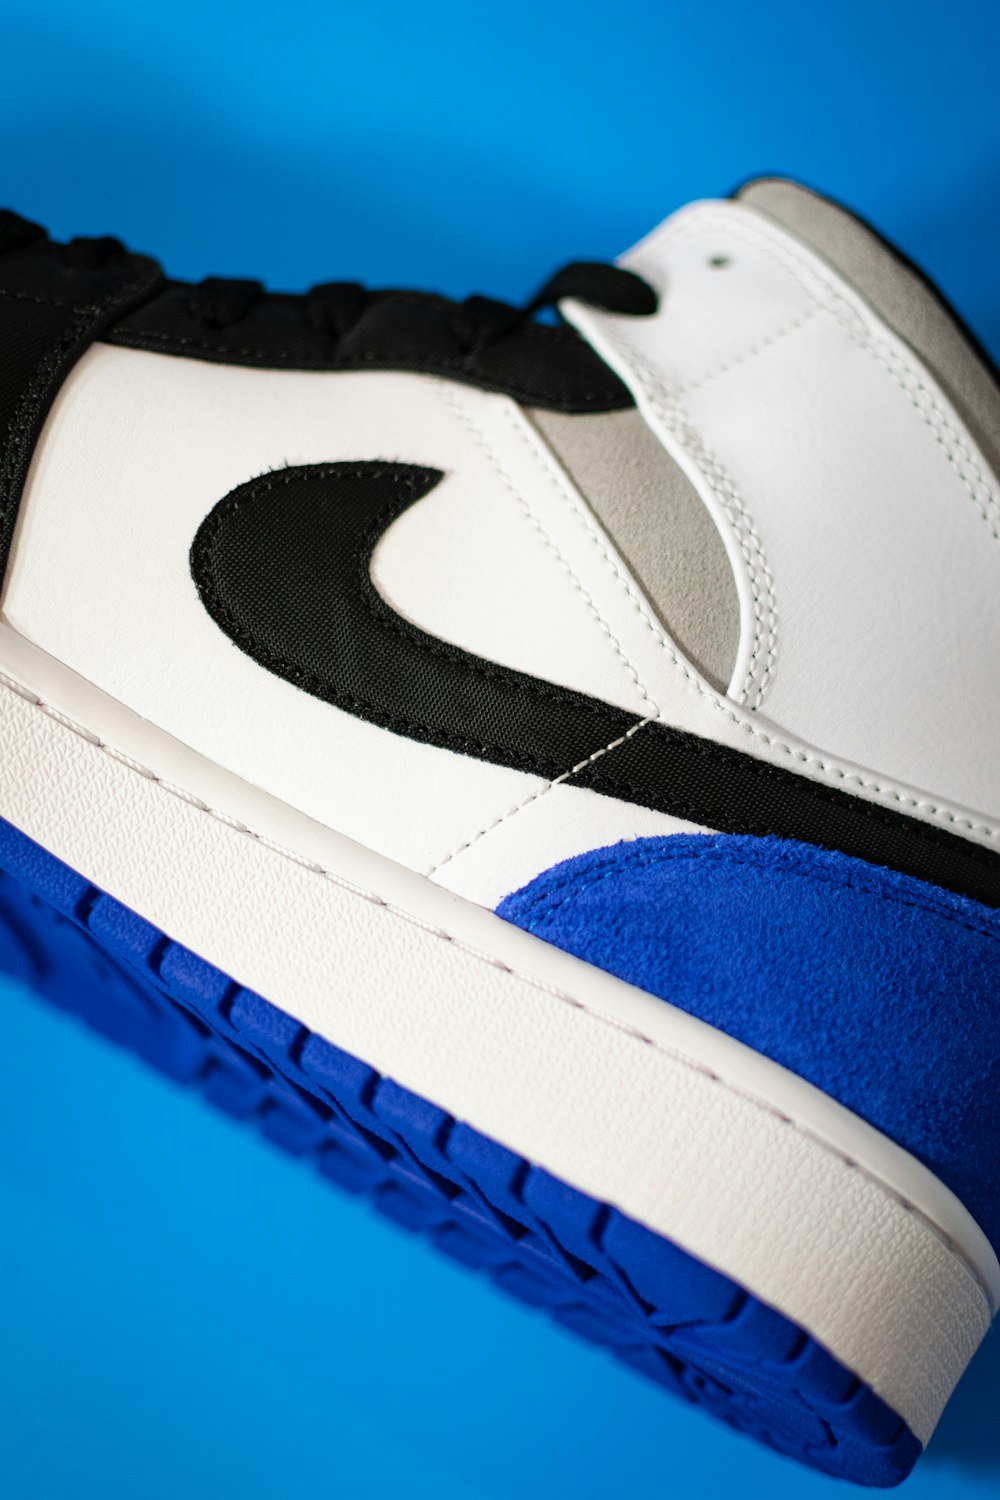 blue white and black nike shoe photo – Free Usa Image on Unsplash